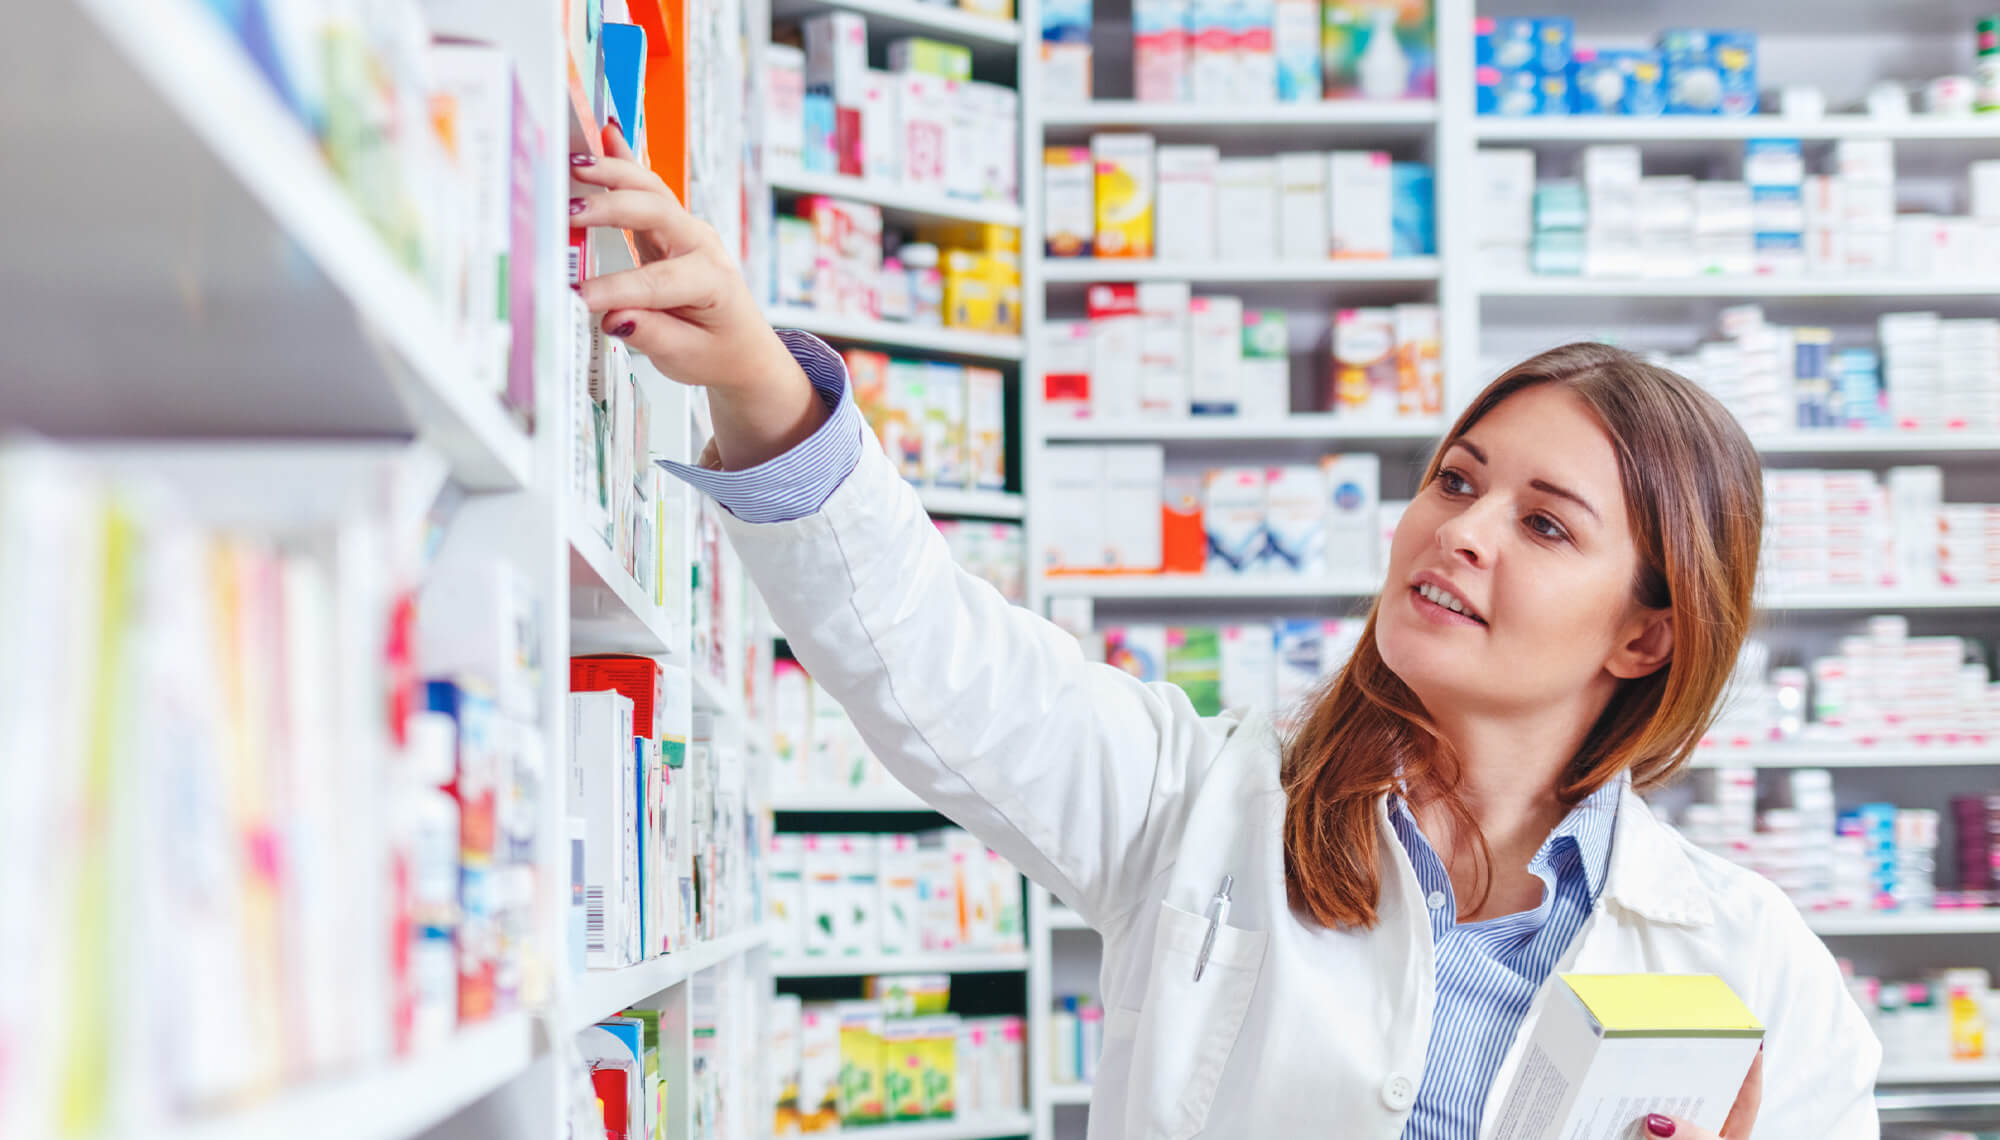 Pharmacist reaching to a shelf in a pharmacy.